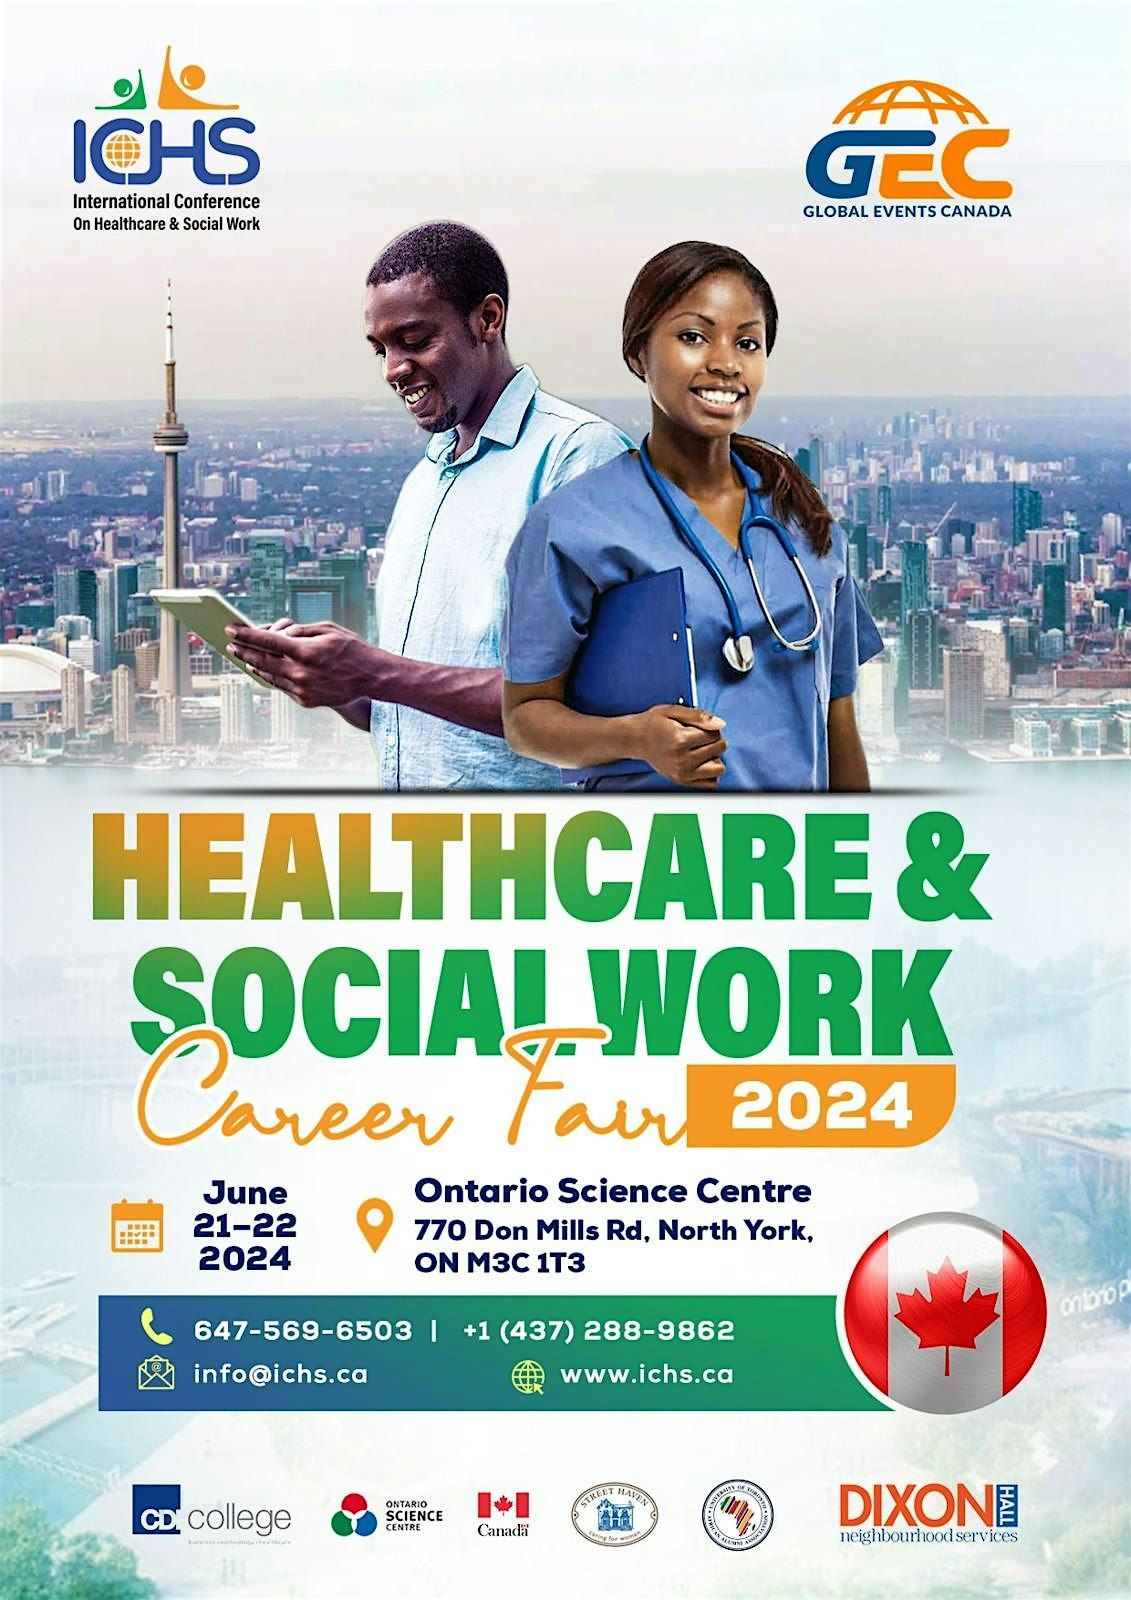 HEALTHCARE & SOCIAL WORK CAREER FAIR 2024